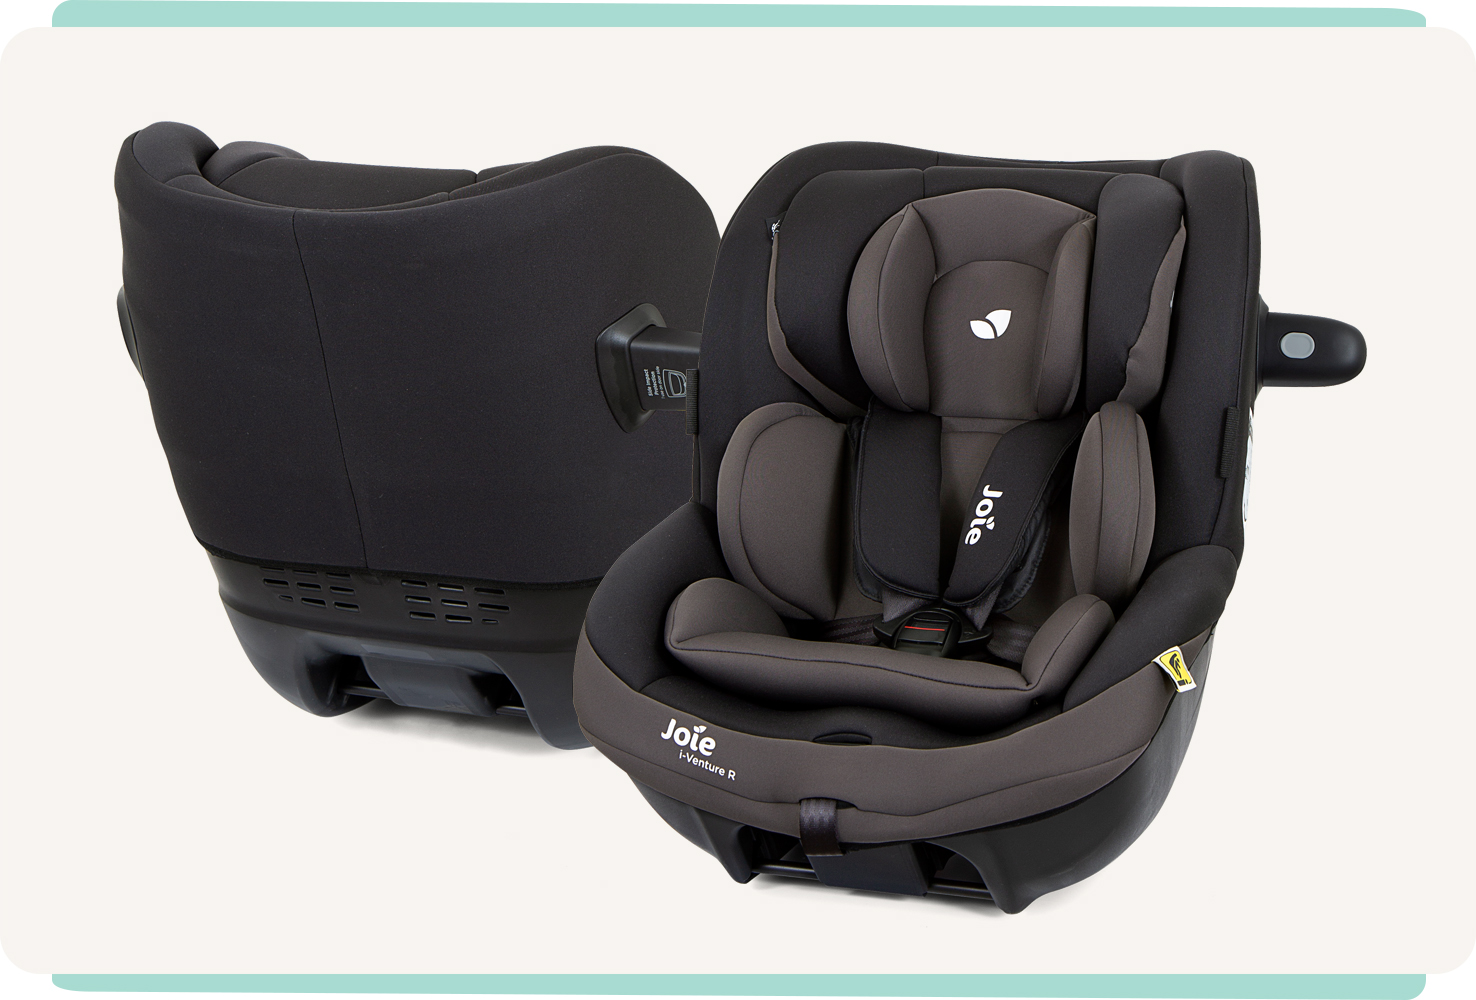   Le siège-auto Joie i-Venture R, coloris noir et gris, représenté sous un angle orienté vers l’arrière sur un socle de siège auto.